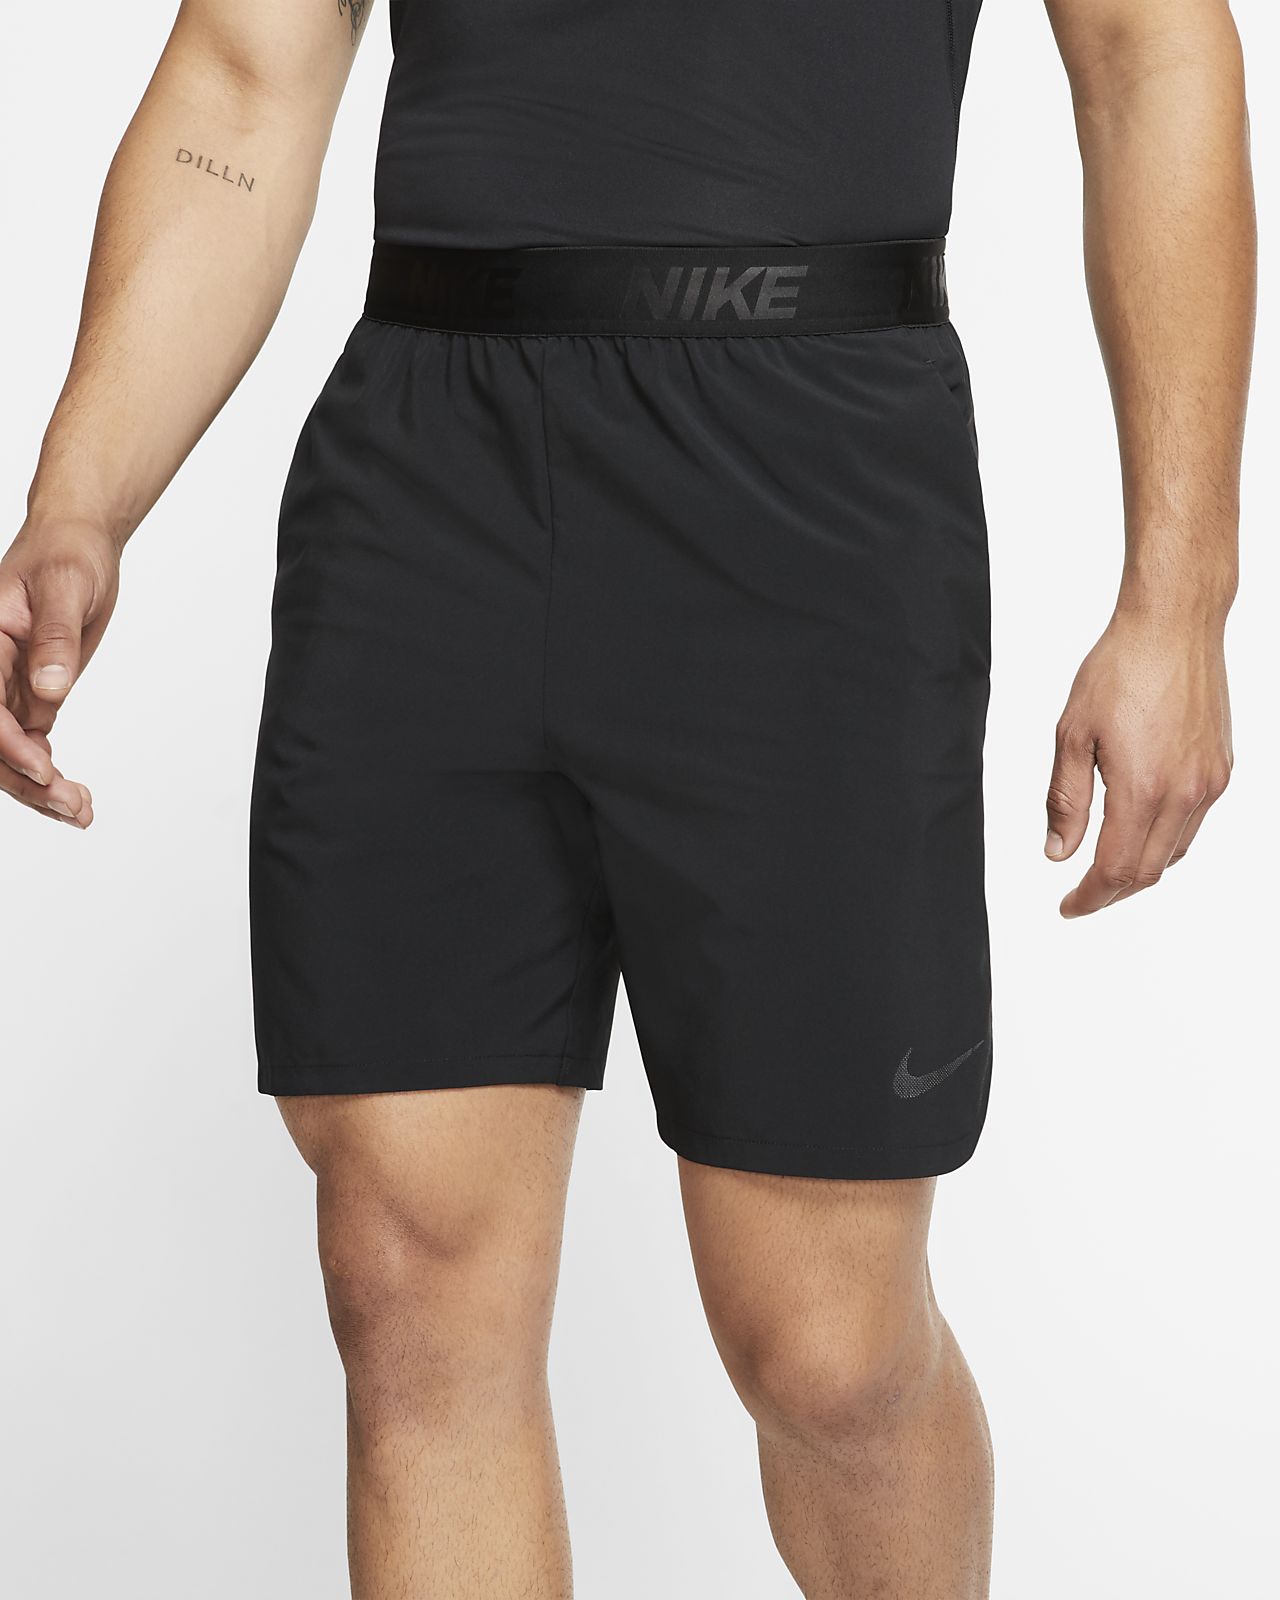 nike training shorts